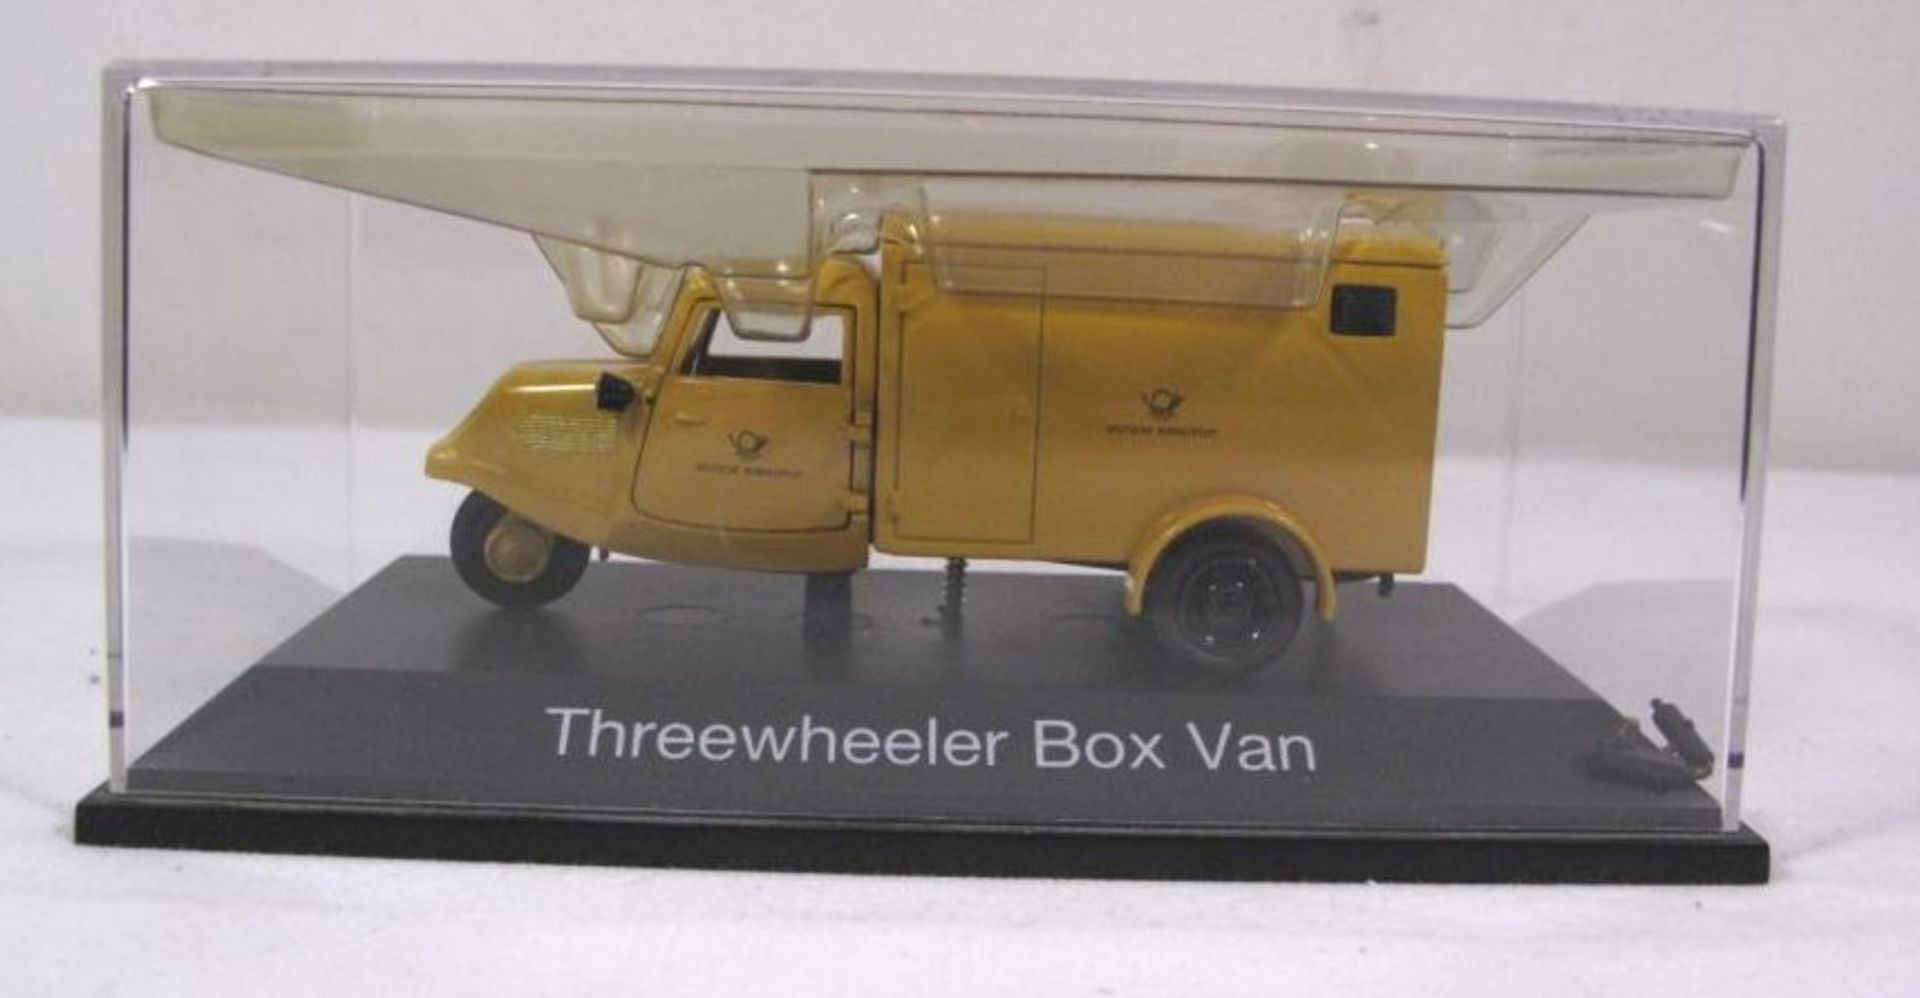 Schuco-Modell in Display "Threewheeler Box Van ", kl. Teil lose in Display.